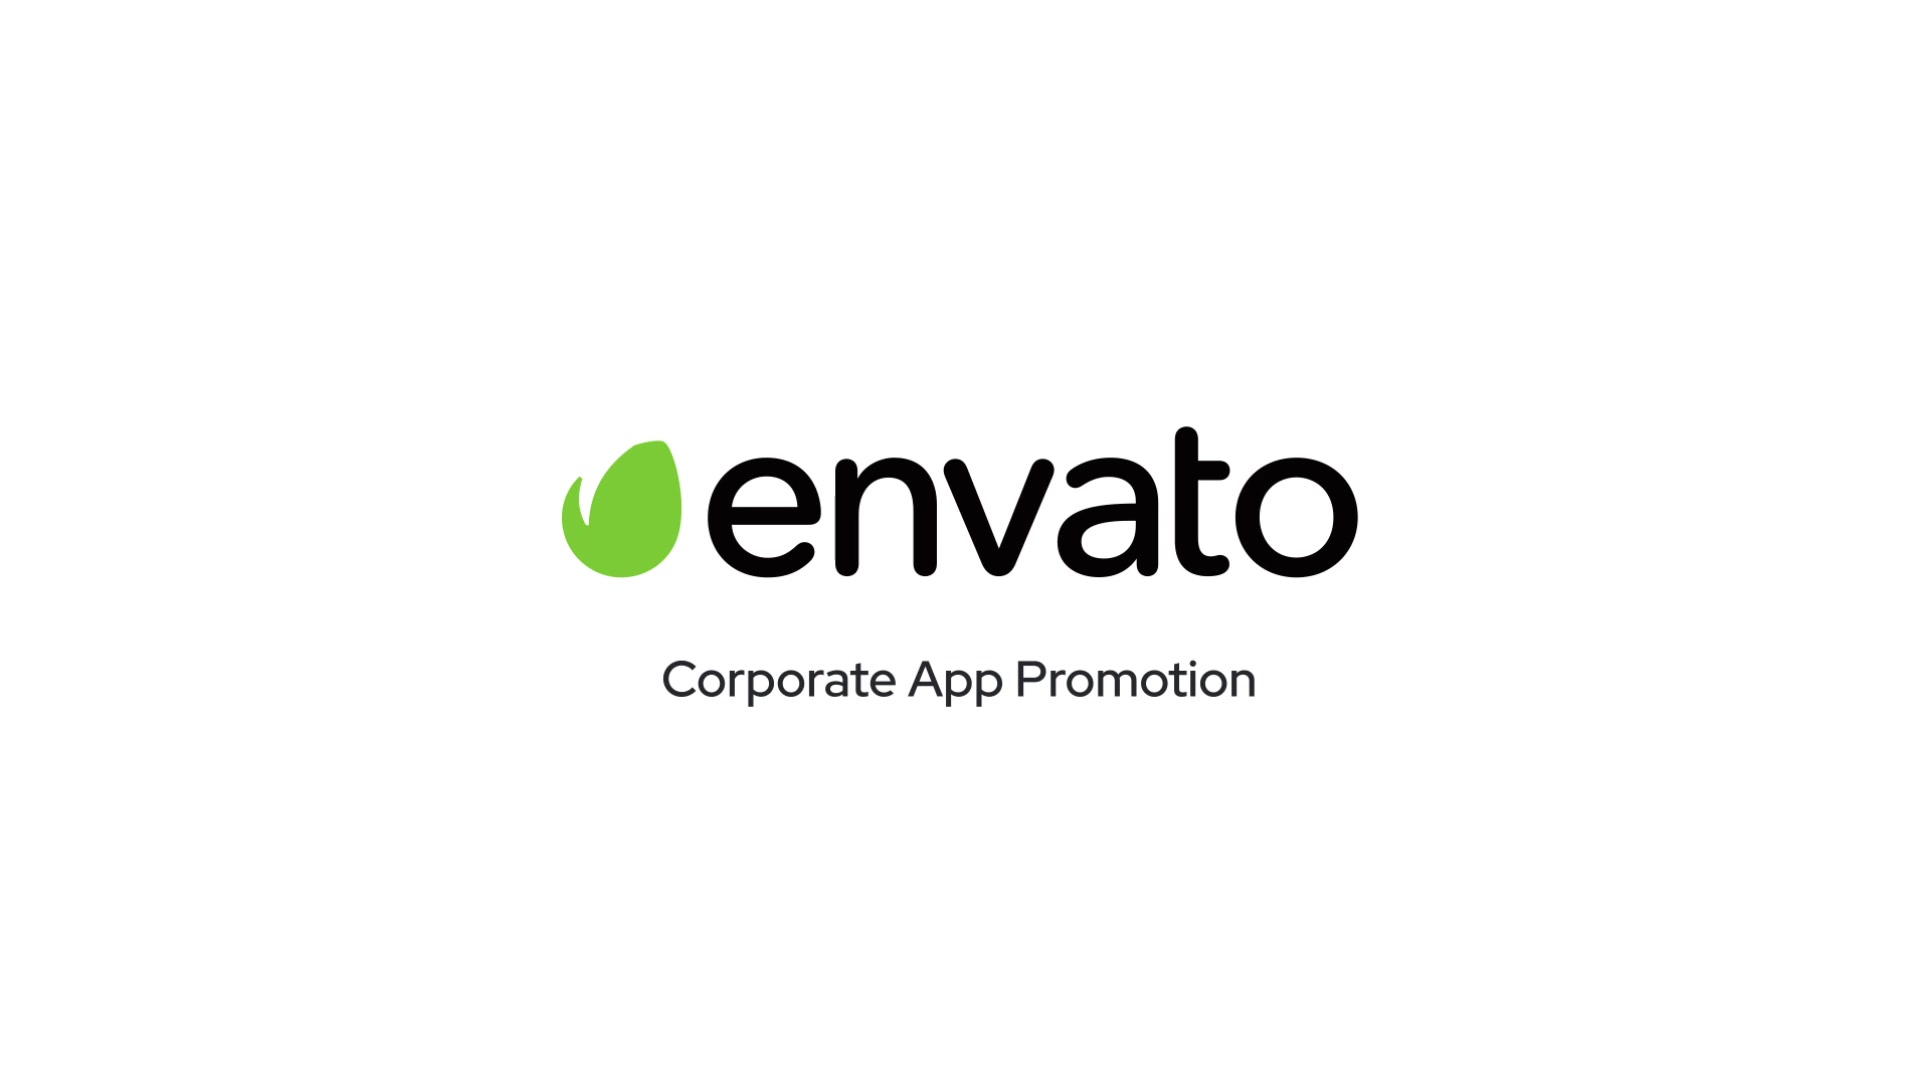 Corporate App Promo for Premiere Pro Videohive 34096293 Premiere Pro Image 10